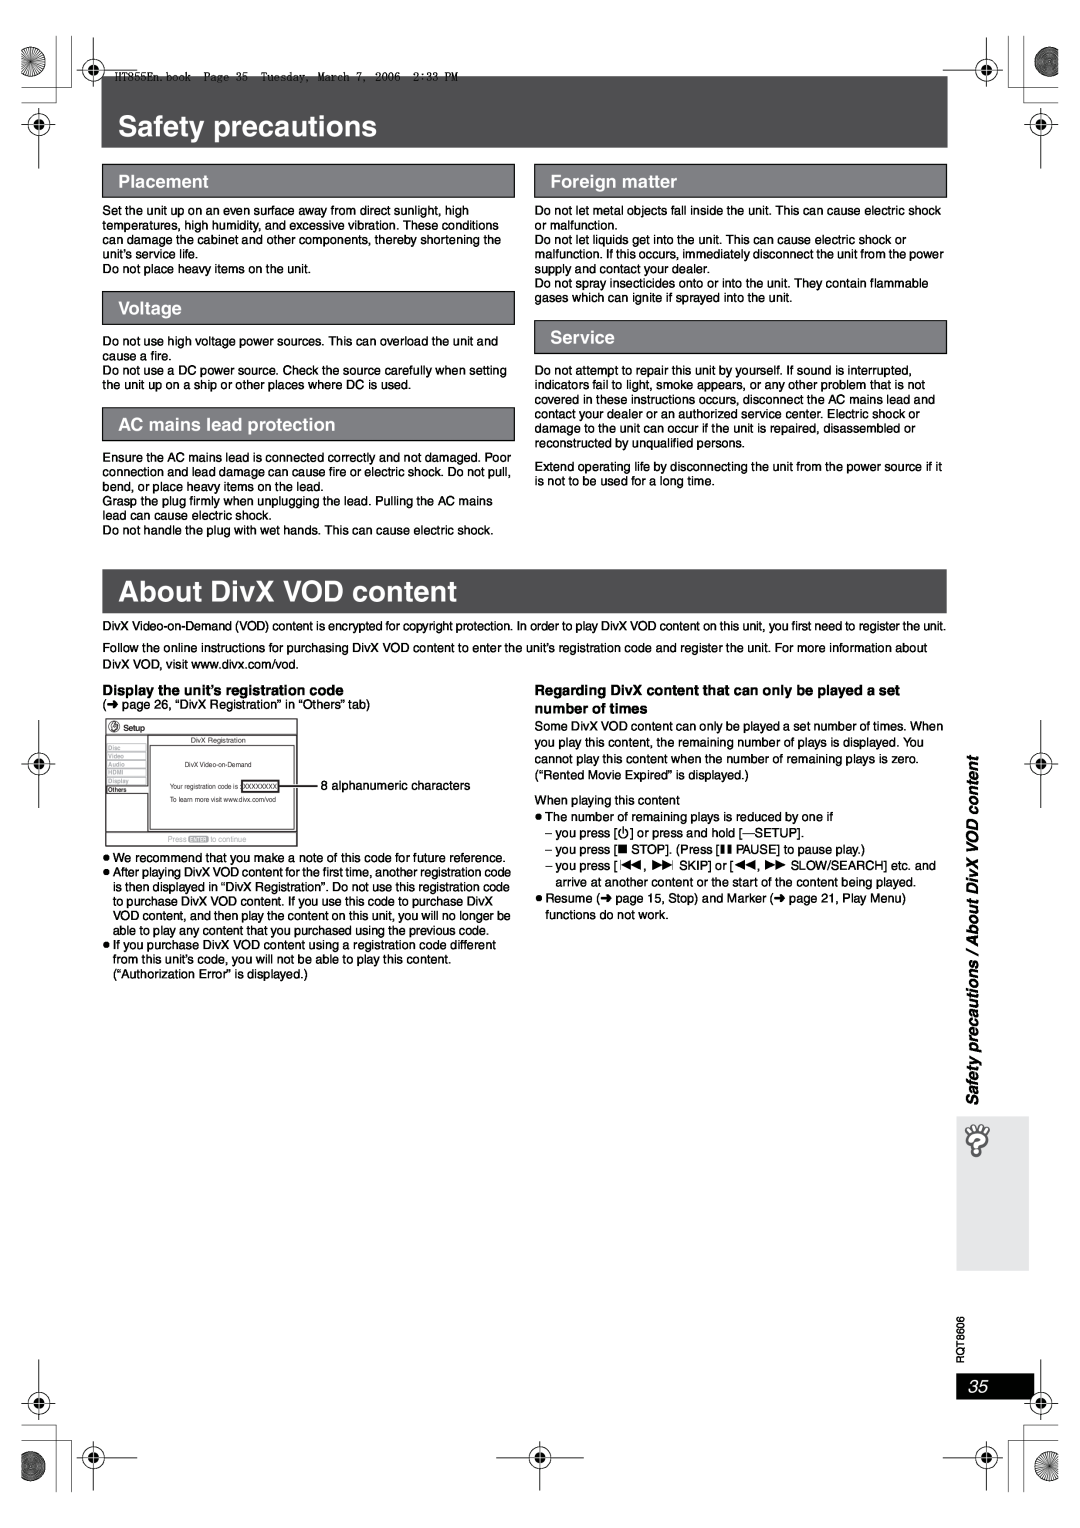 Panasonic SC-HT855 manual Safety precautions, About DivX VOD content, Placement, Voltage, AC mains lead protection, Service 